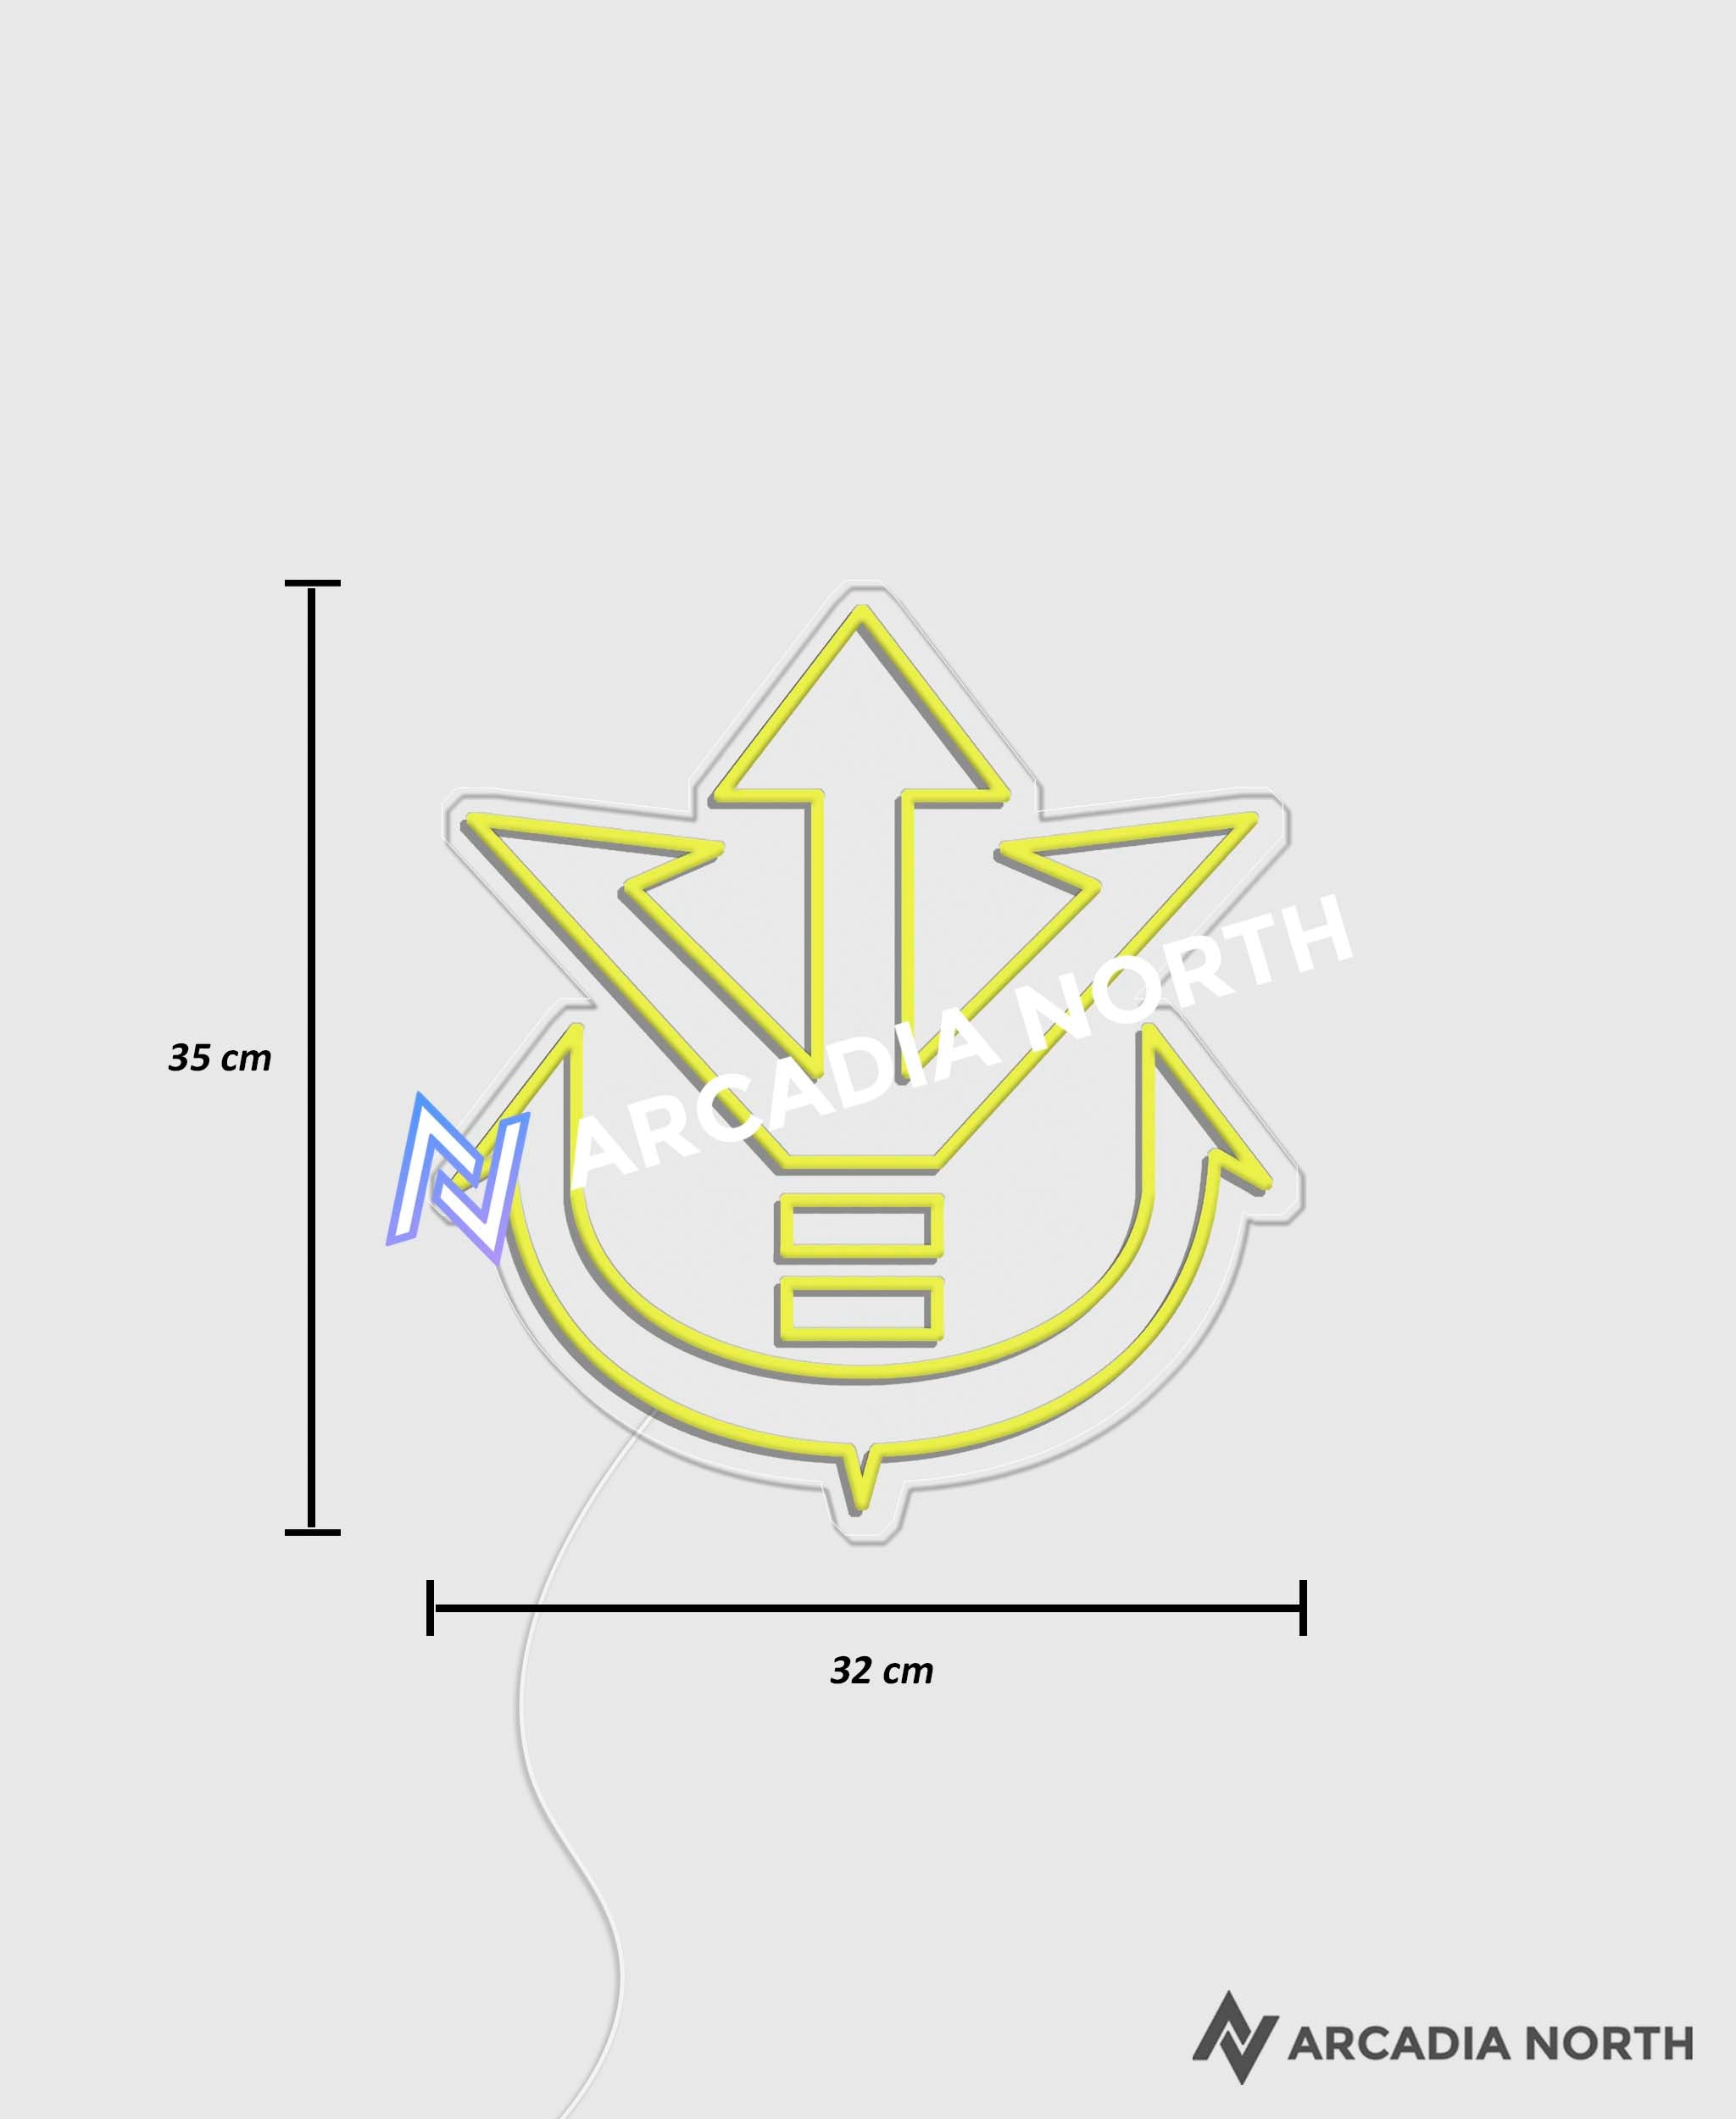 Dragon Ball Z Vegeta Saiyan Prince Royal Crest symbol anime neon sign by Arcadia North